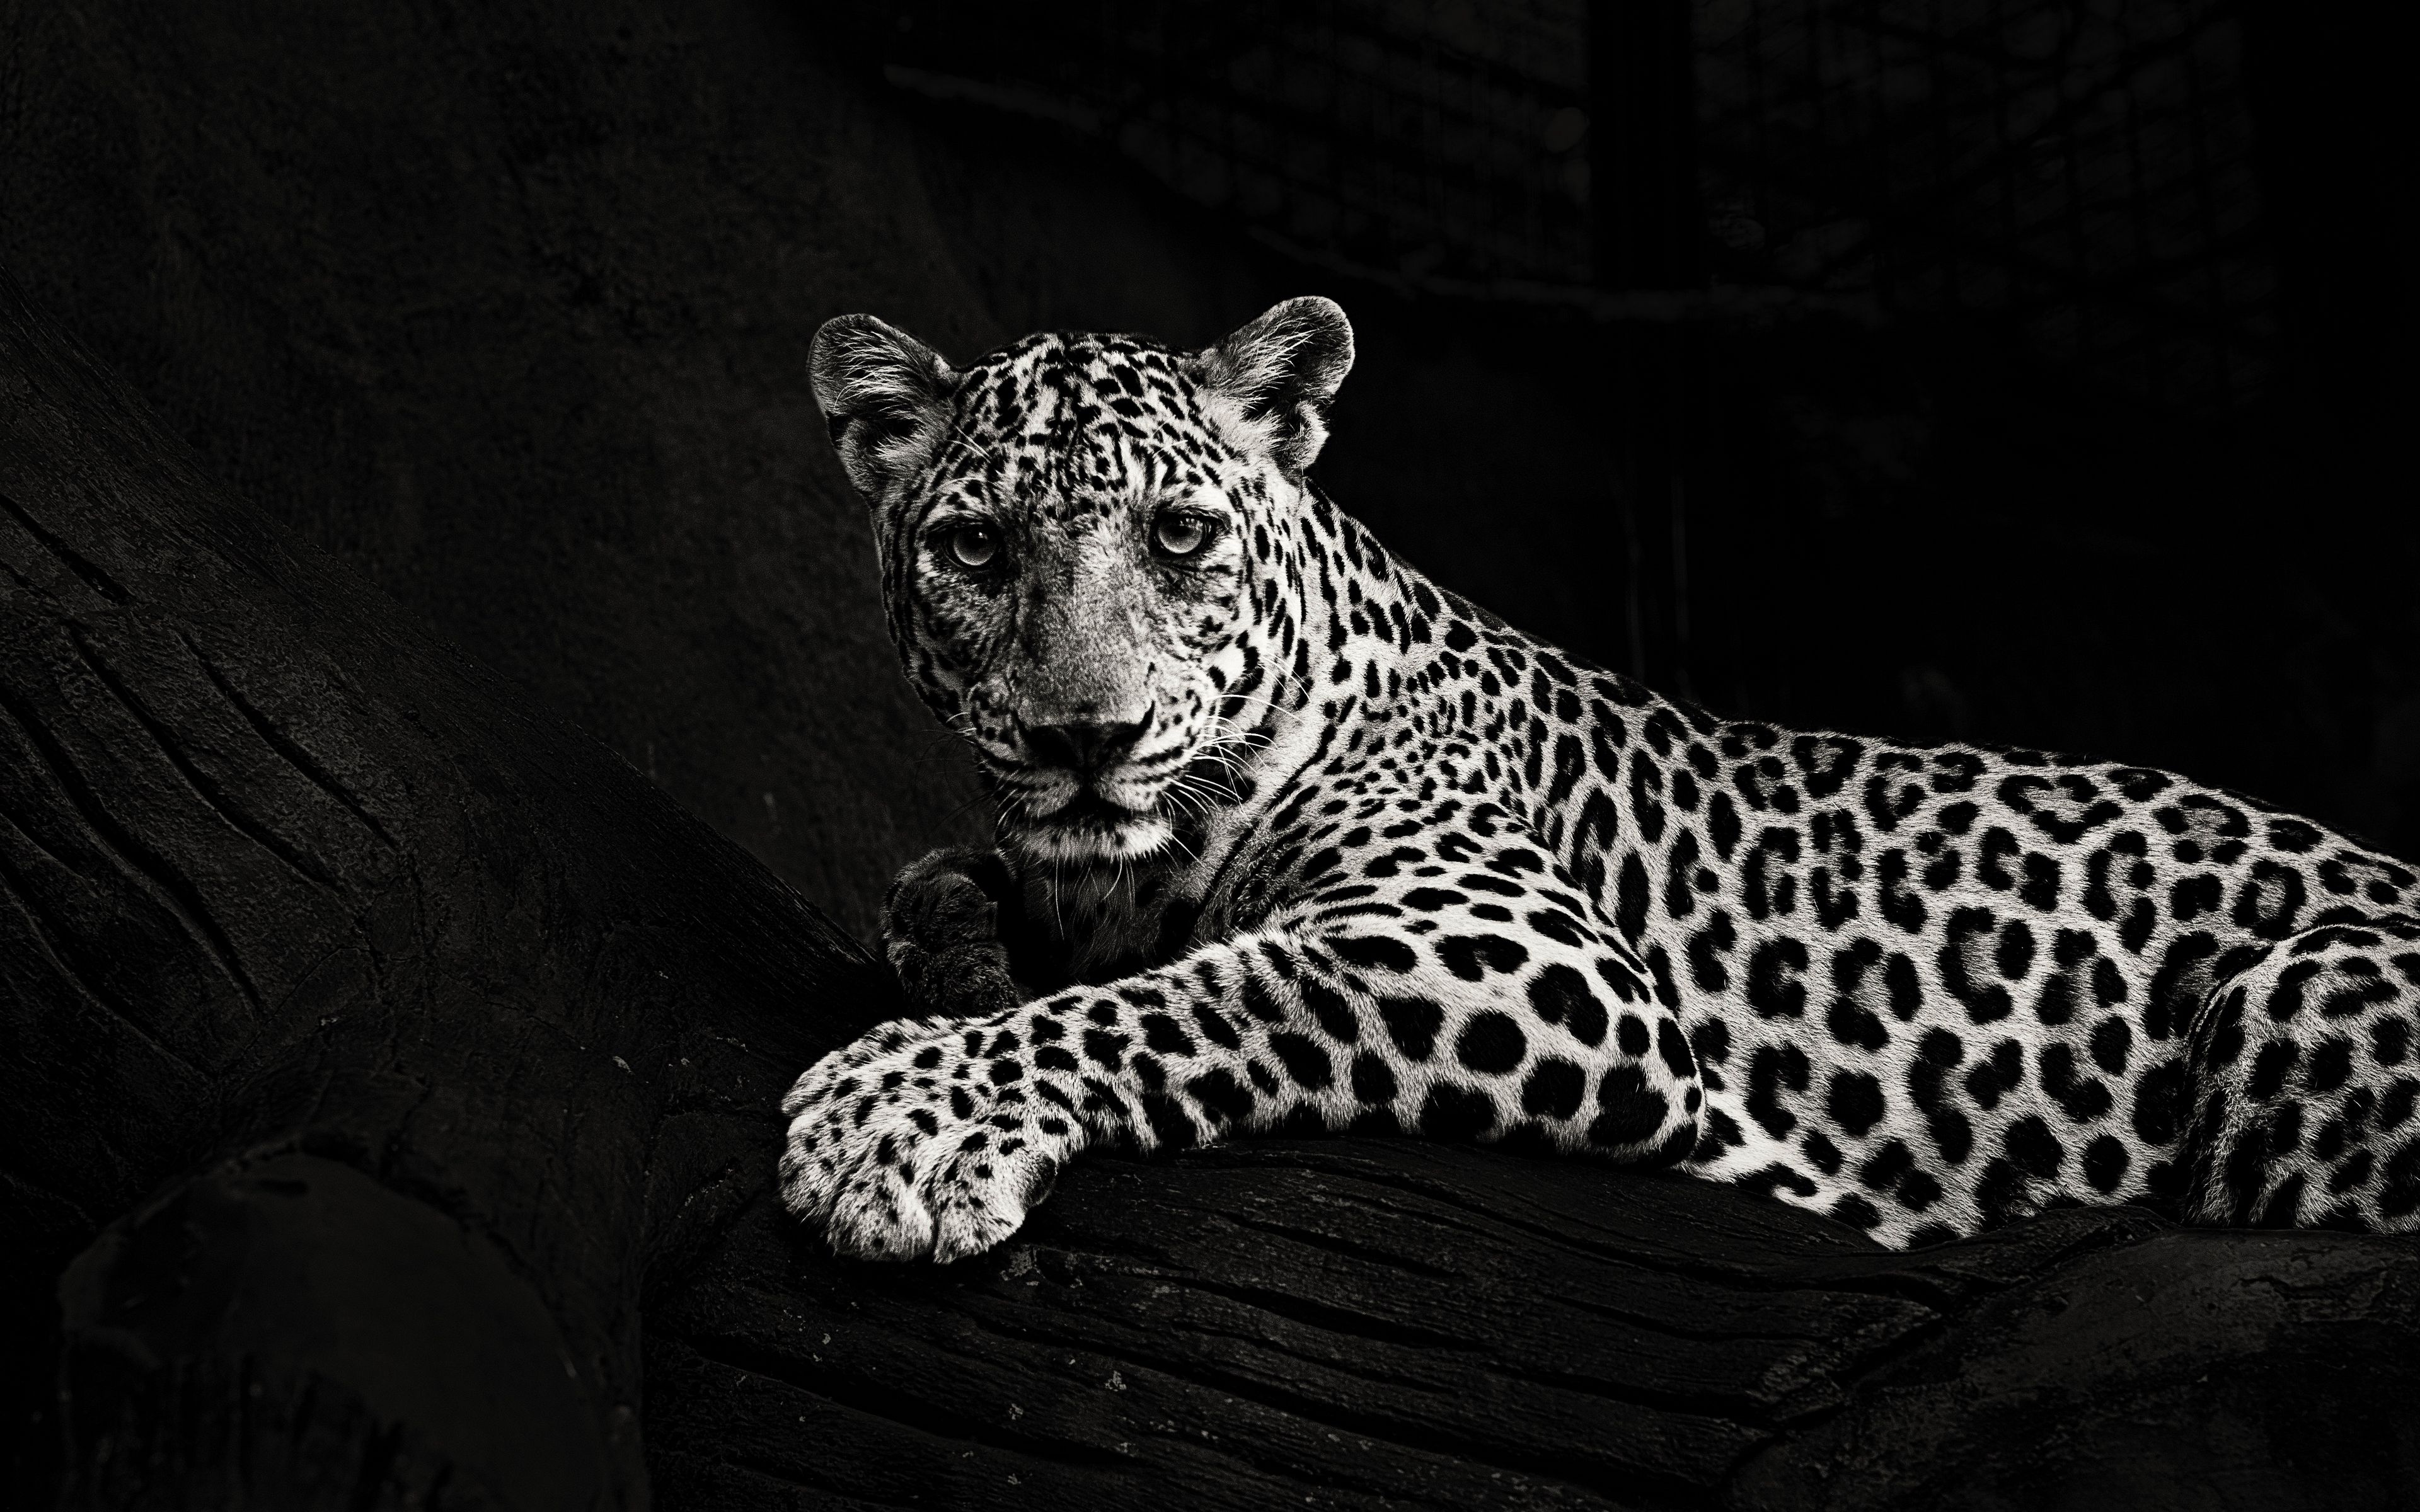 Download wallpaper 3840x2400 jaguar, bw, predator, sight, big cat 4k ultra  hd 16:10 hd background